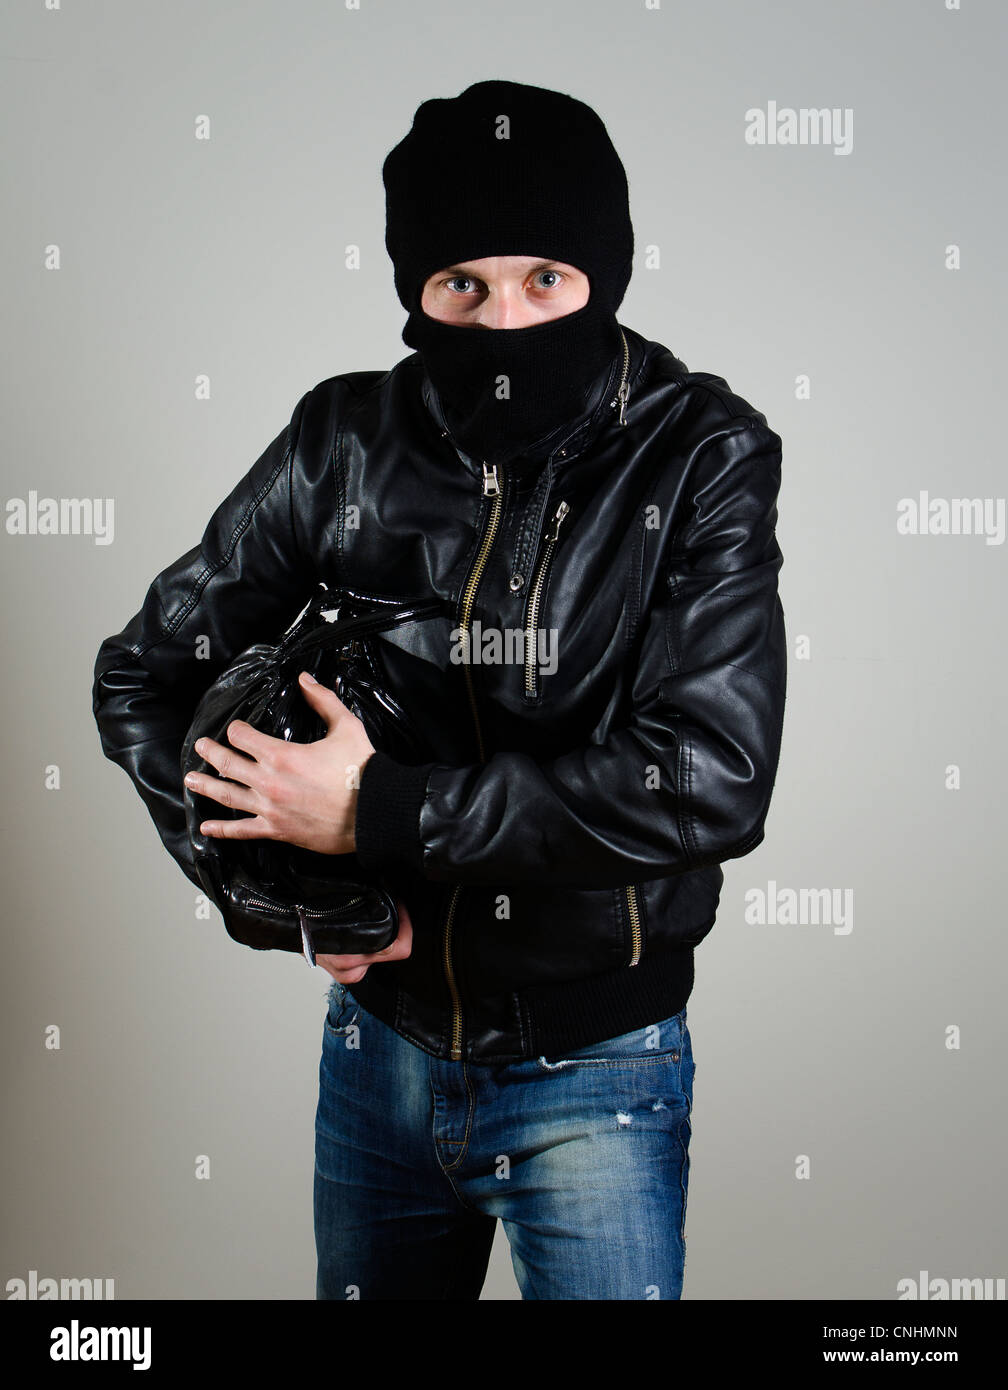 Ritratto del ladro maschio con una borsetta. Foto Stock